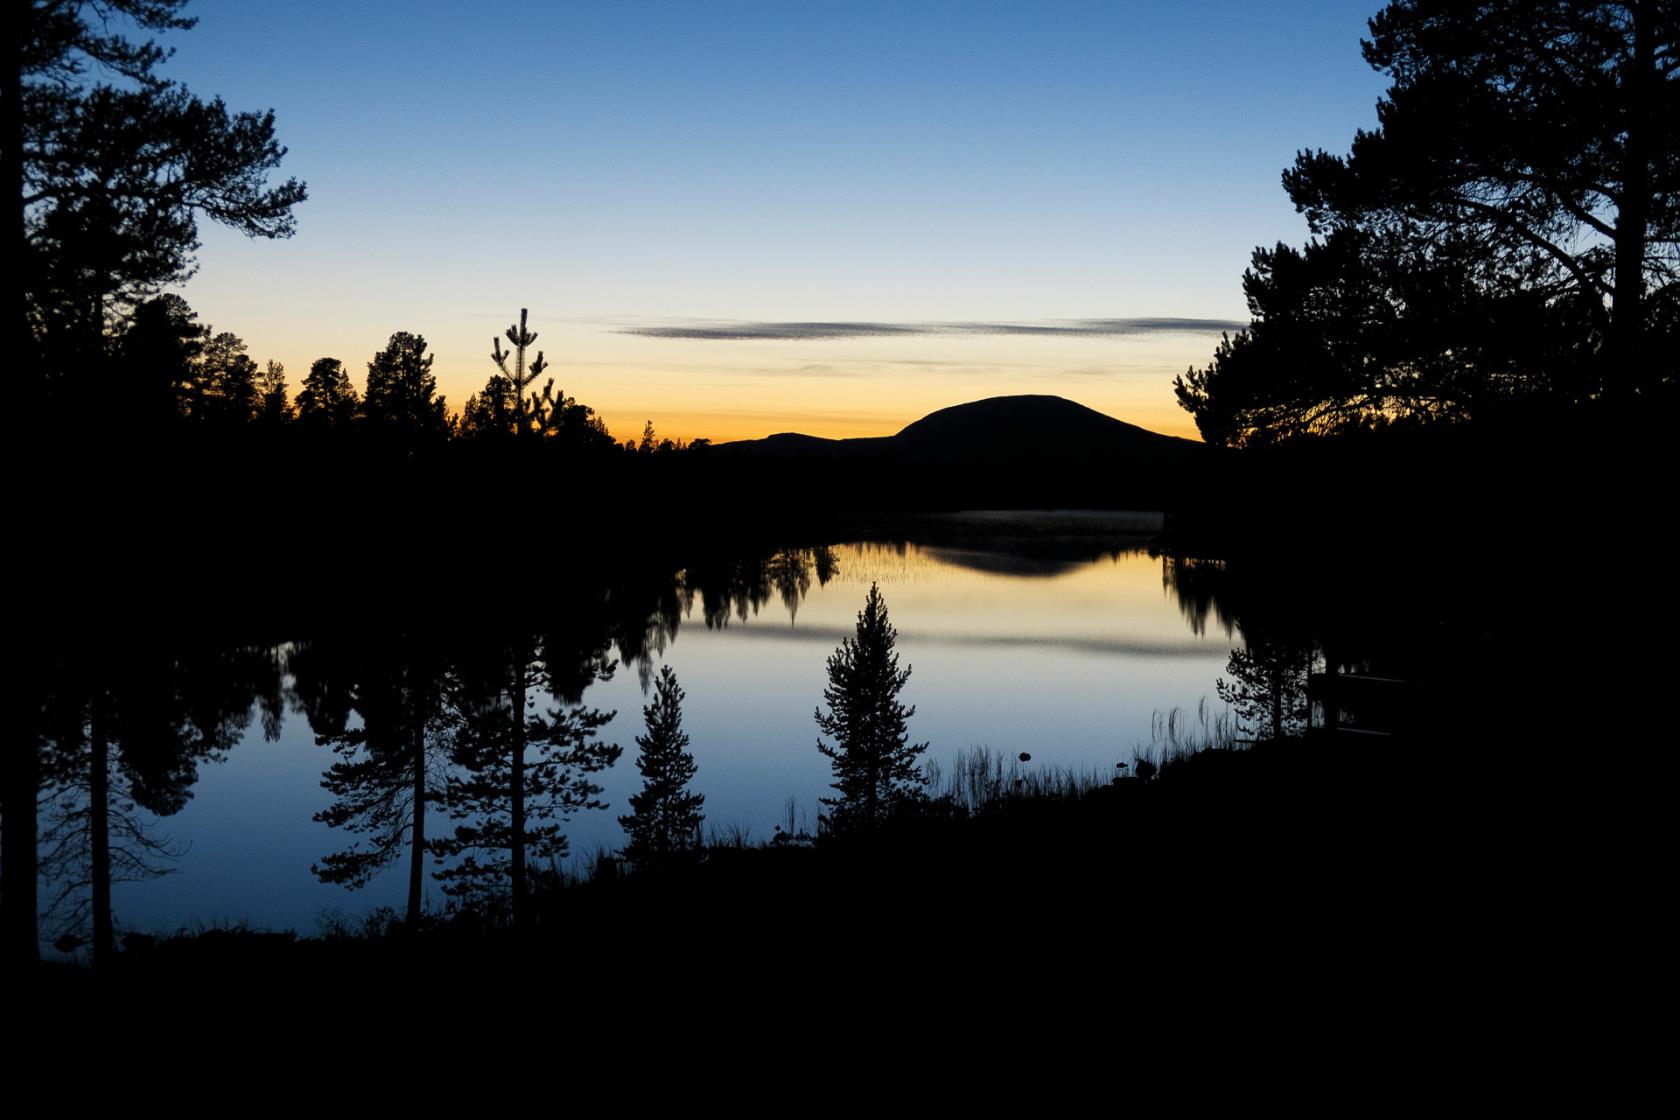 Skog och ett berg reflekteras på en stilla vattenyta i solnedgången.